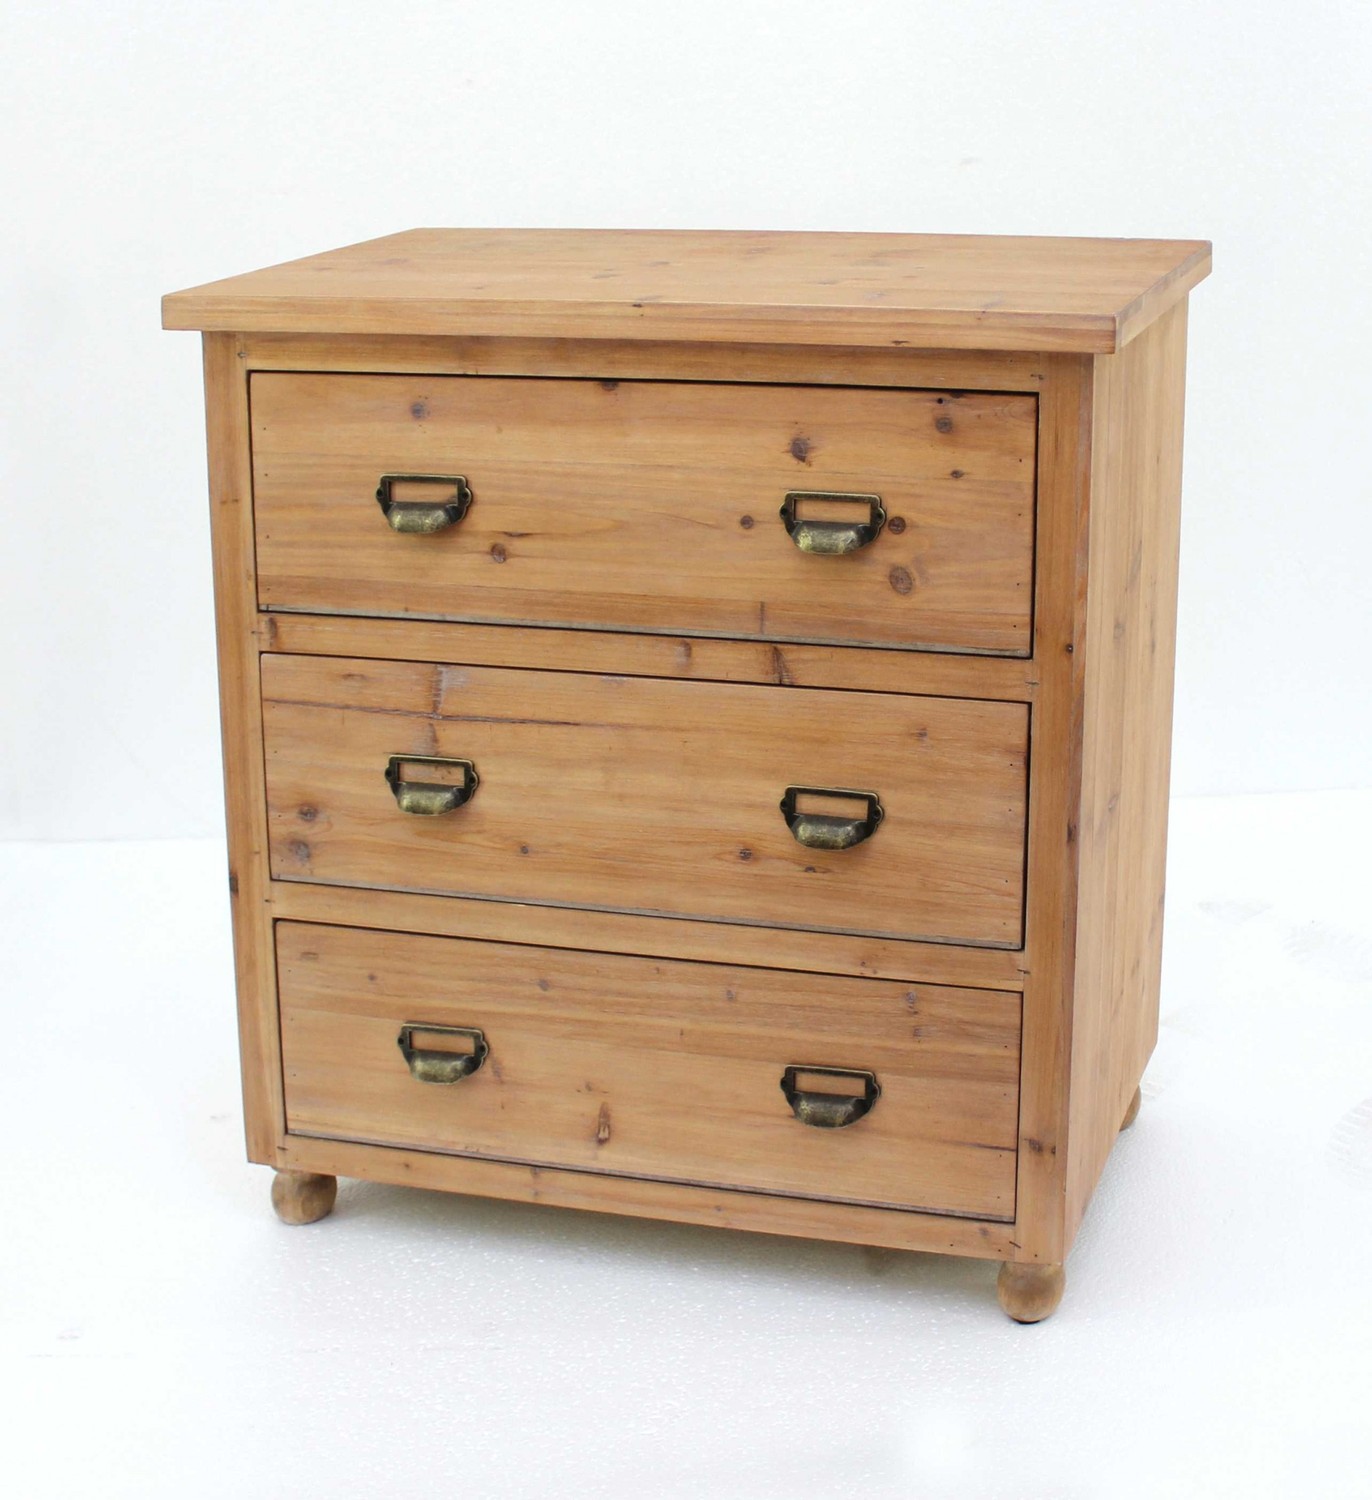 15" x 30" x 30" Natural, 3 Drawer, Minimalist Loft, Wood - Filing Cabinet